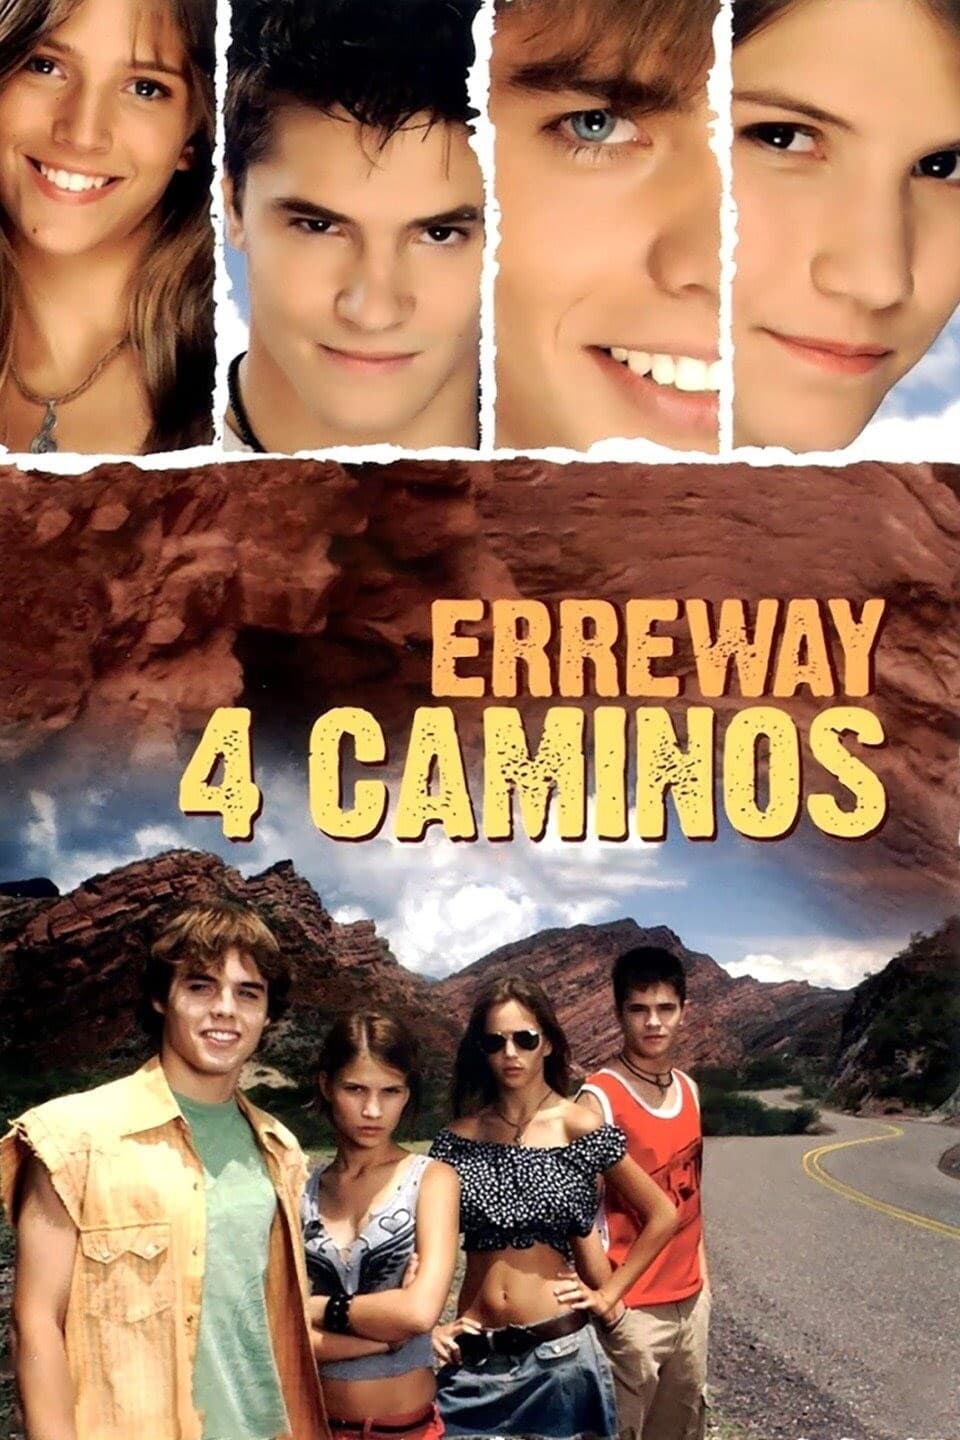 Erreway: 4 caminos